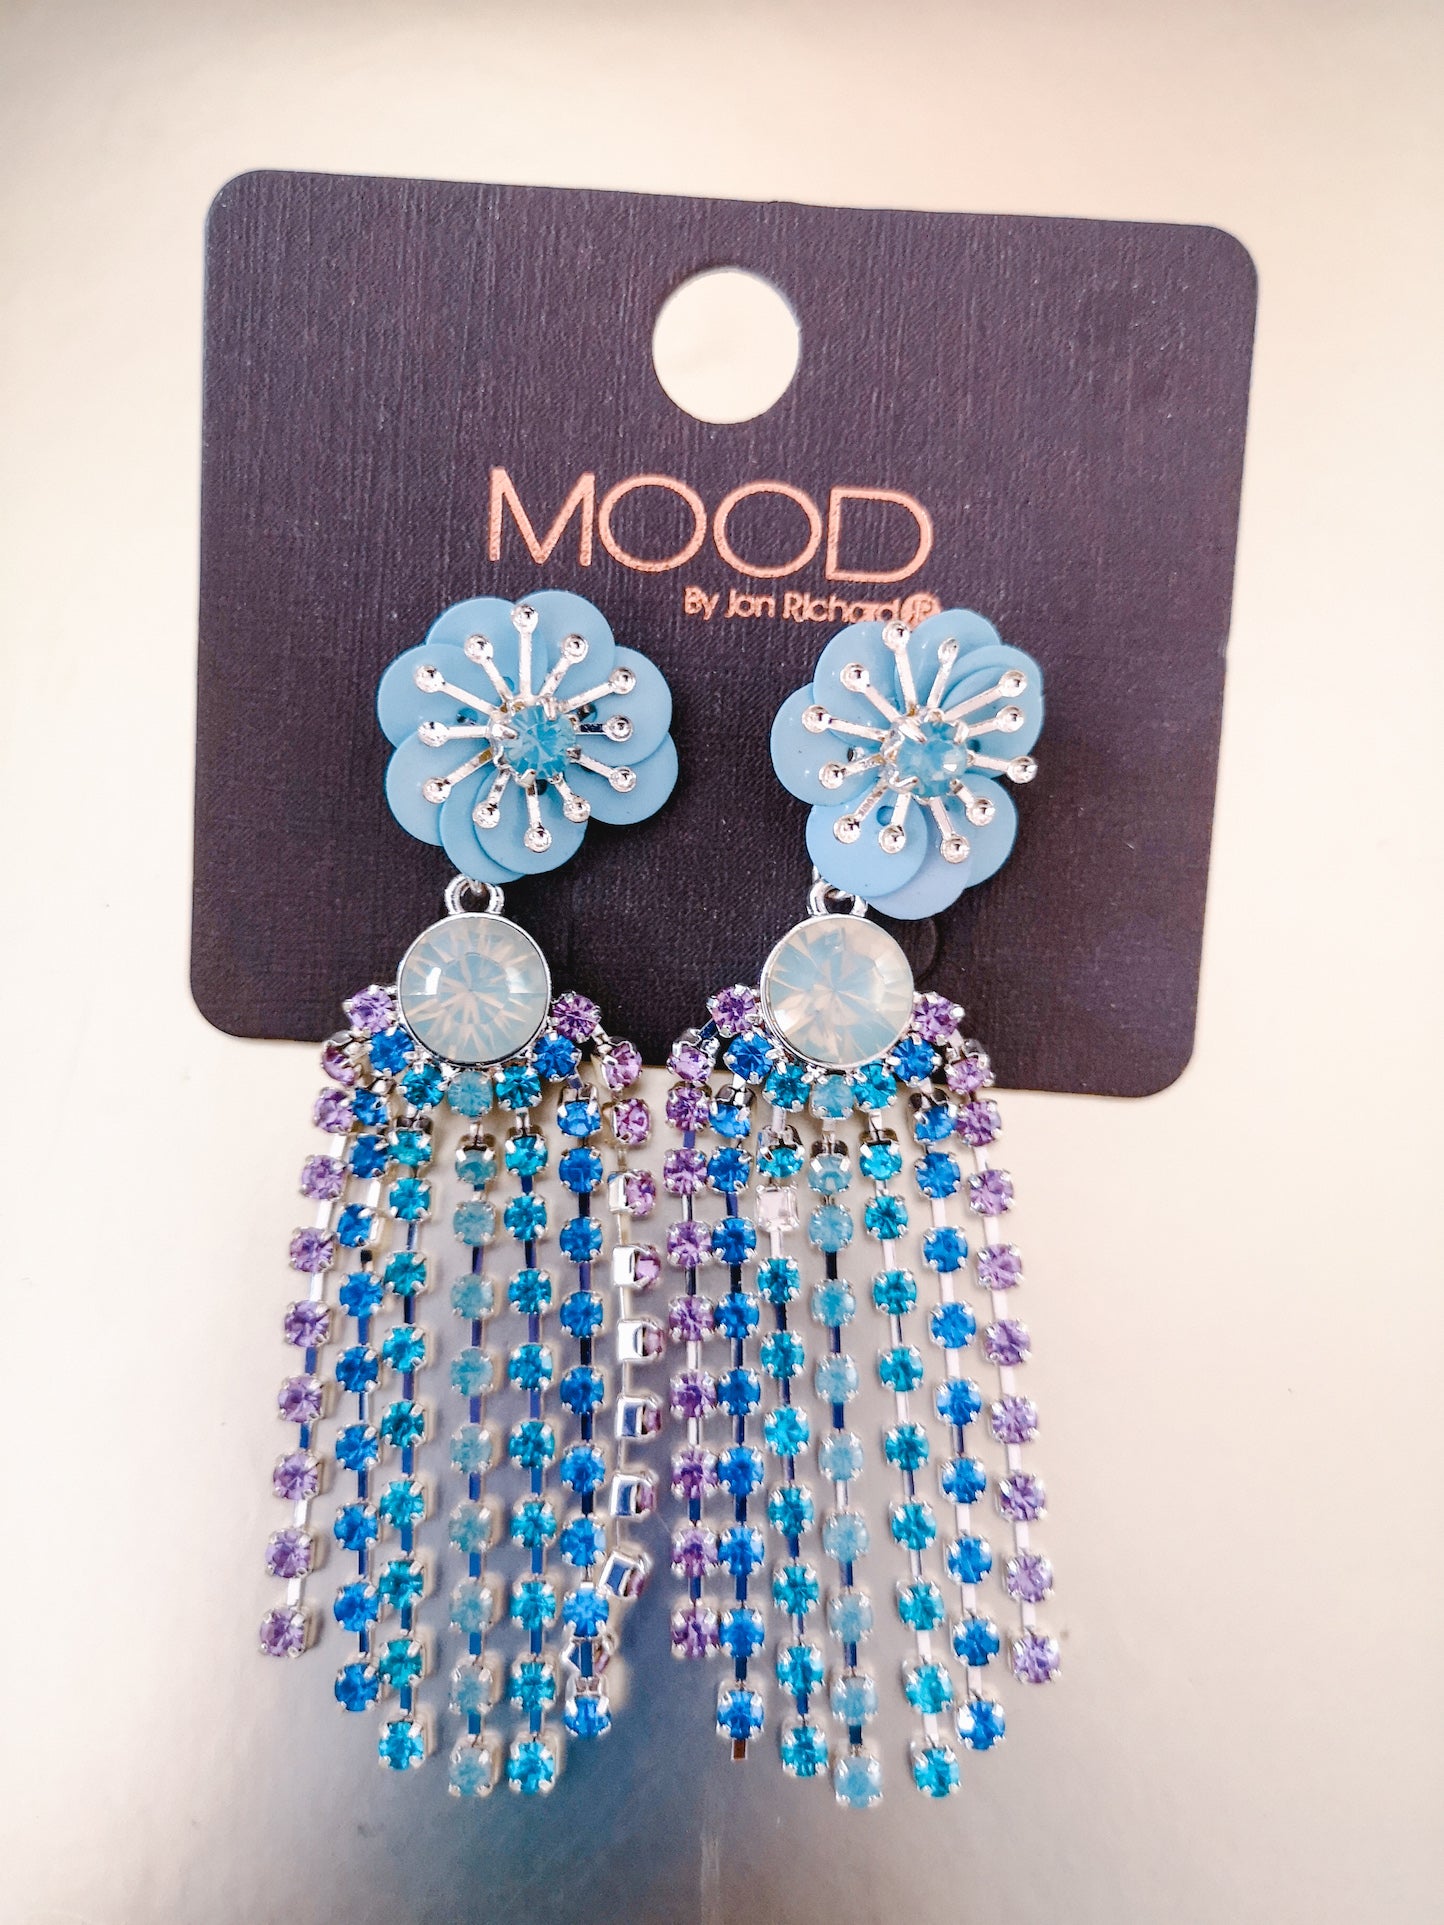 The Gift Shop - Mood by Jon Richard Blue ombre earrings